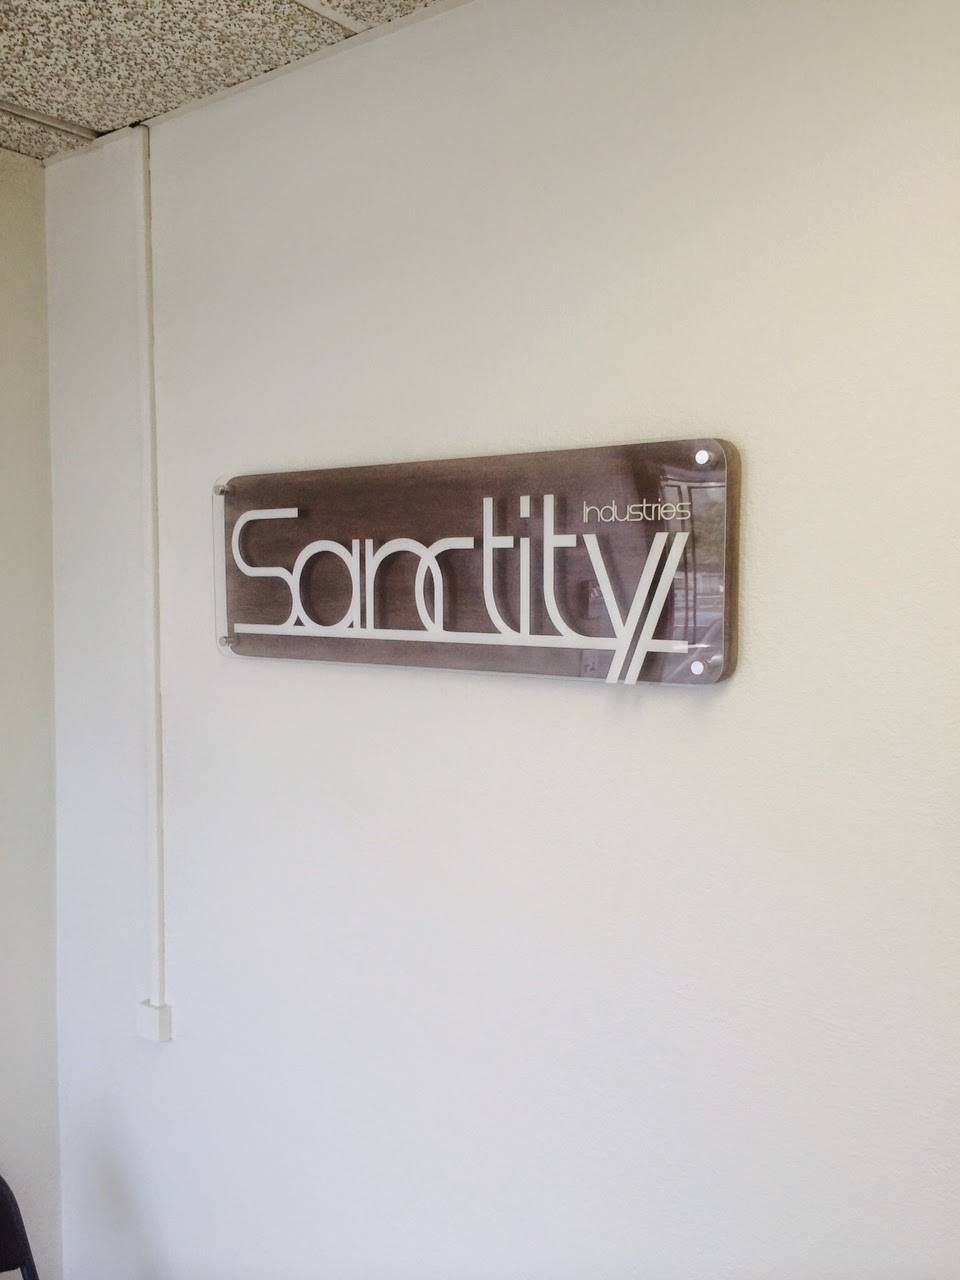 Sanctity Industries Inc. | 2110 E McFadden Ave ste d, Santa Ana, CA 92705 | Phone: (714) 836-5856